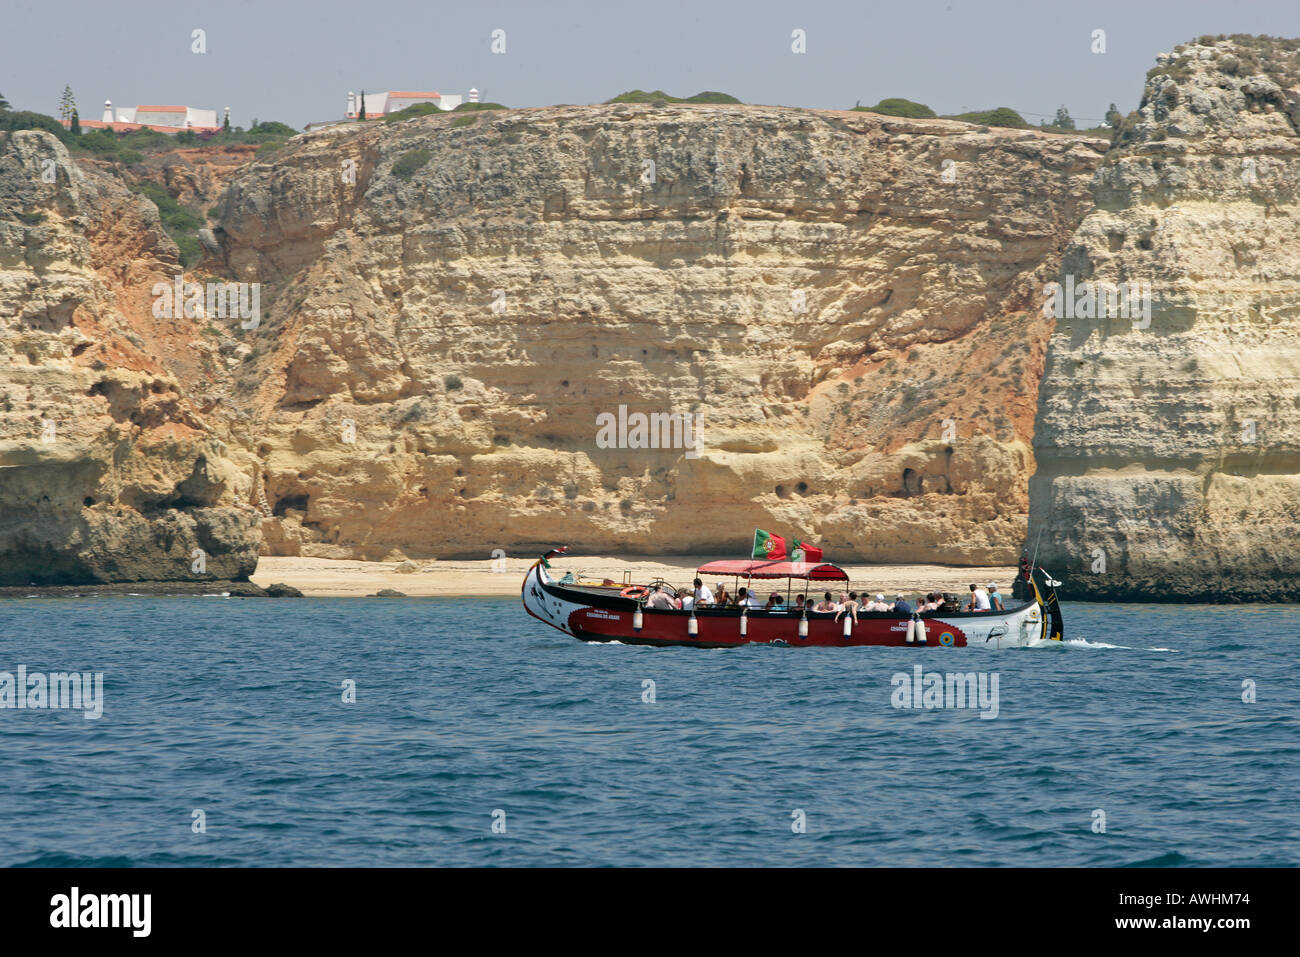 Ein portugiesischer Ausflugsschiff mit einem traditionell geformten Rumpf Motoren vorbei an Stränden und Klippen entlang der Algarve-Küste Stockfoto